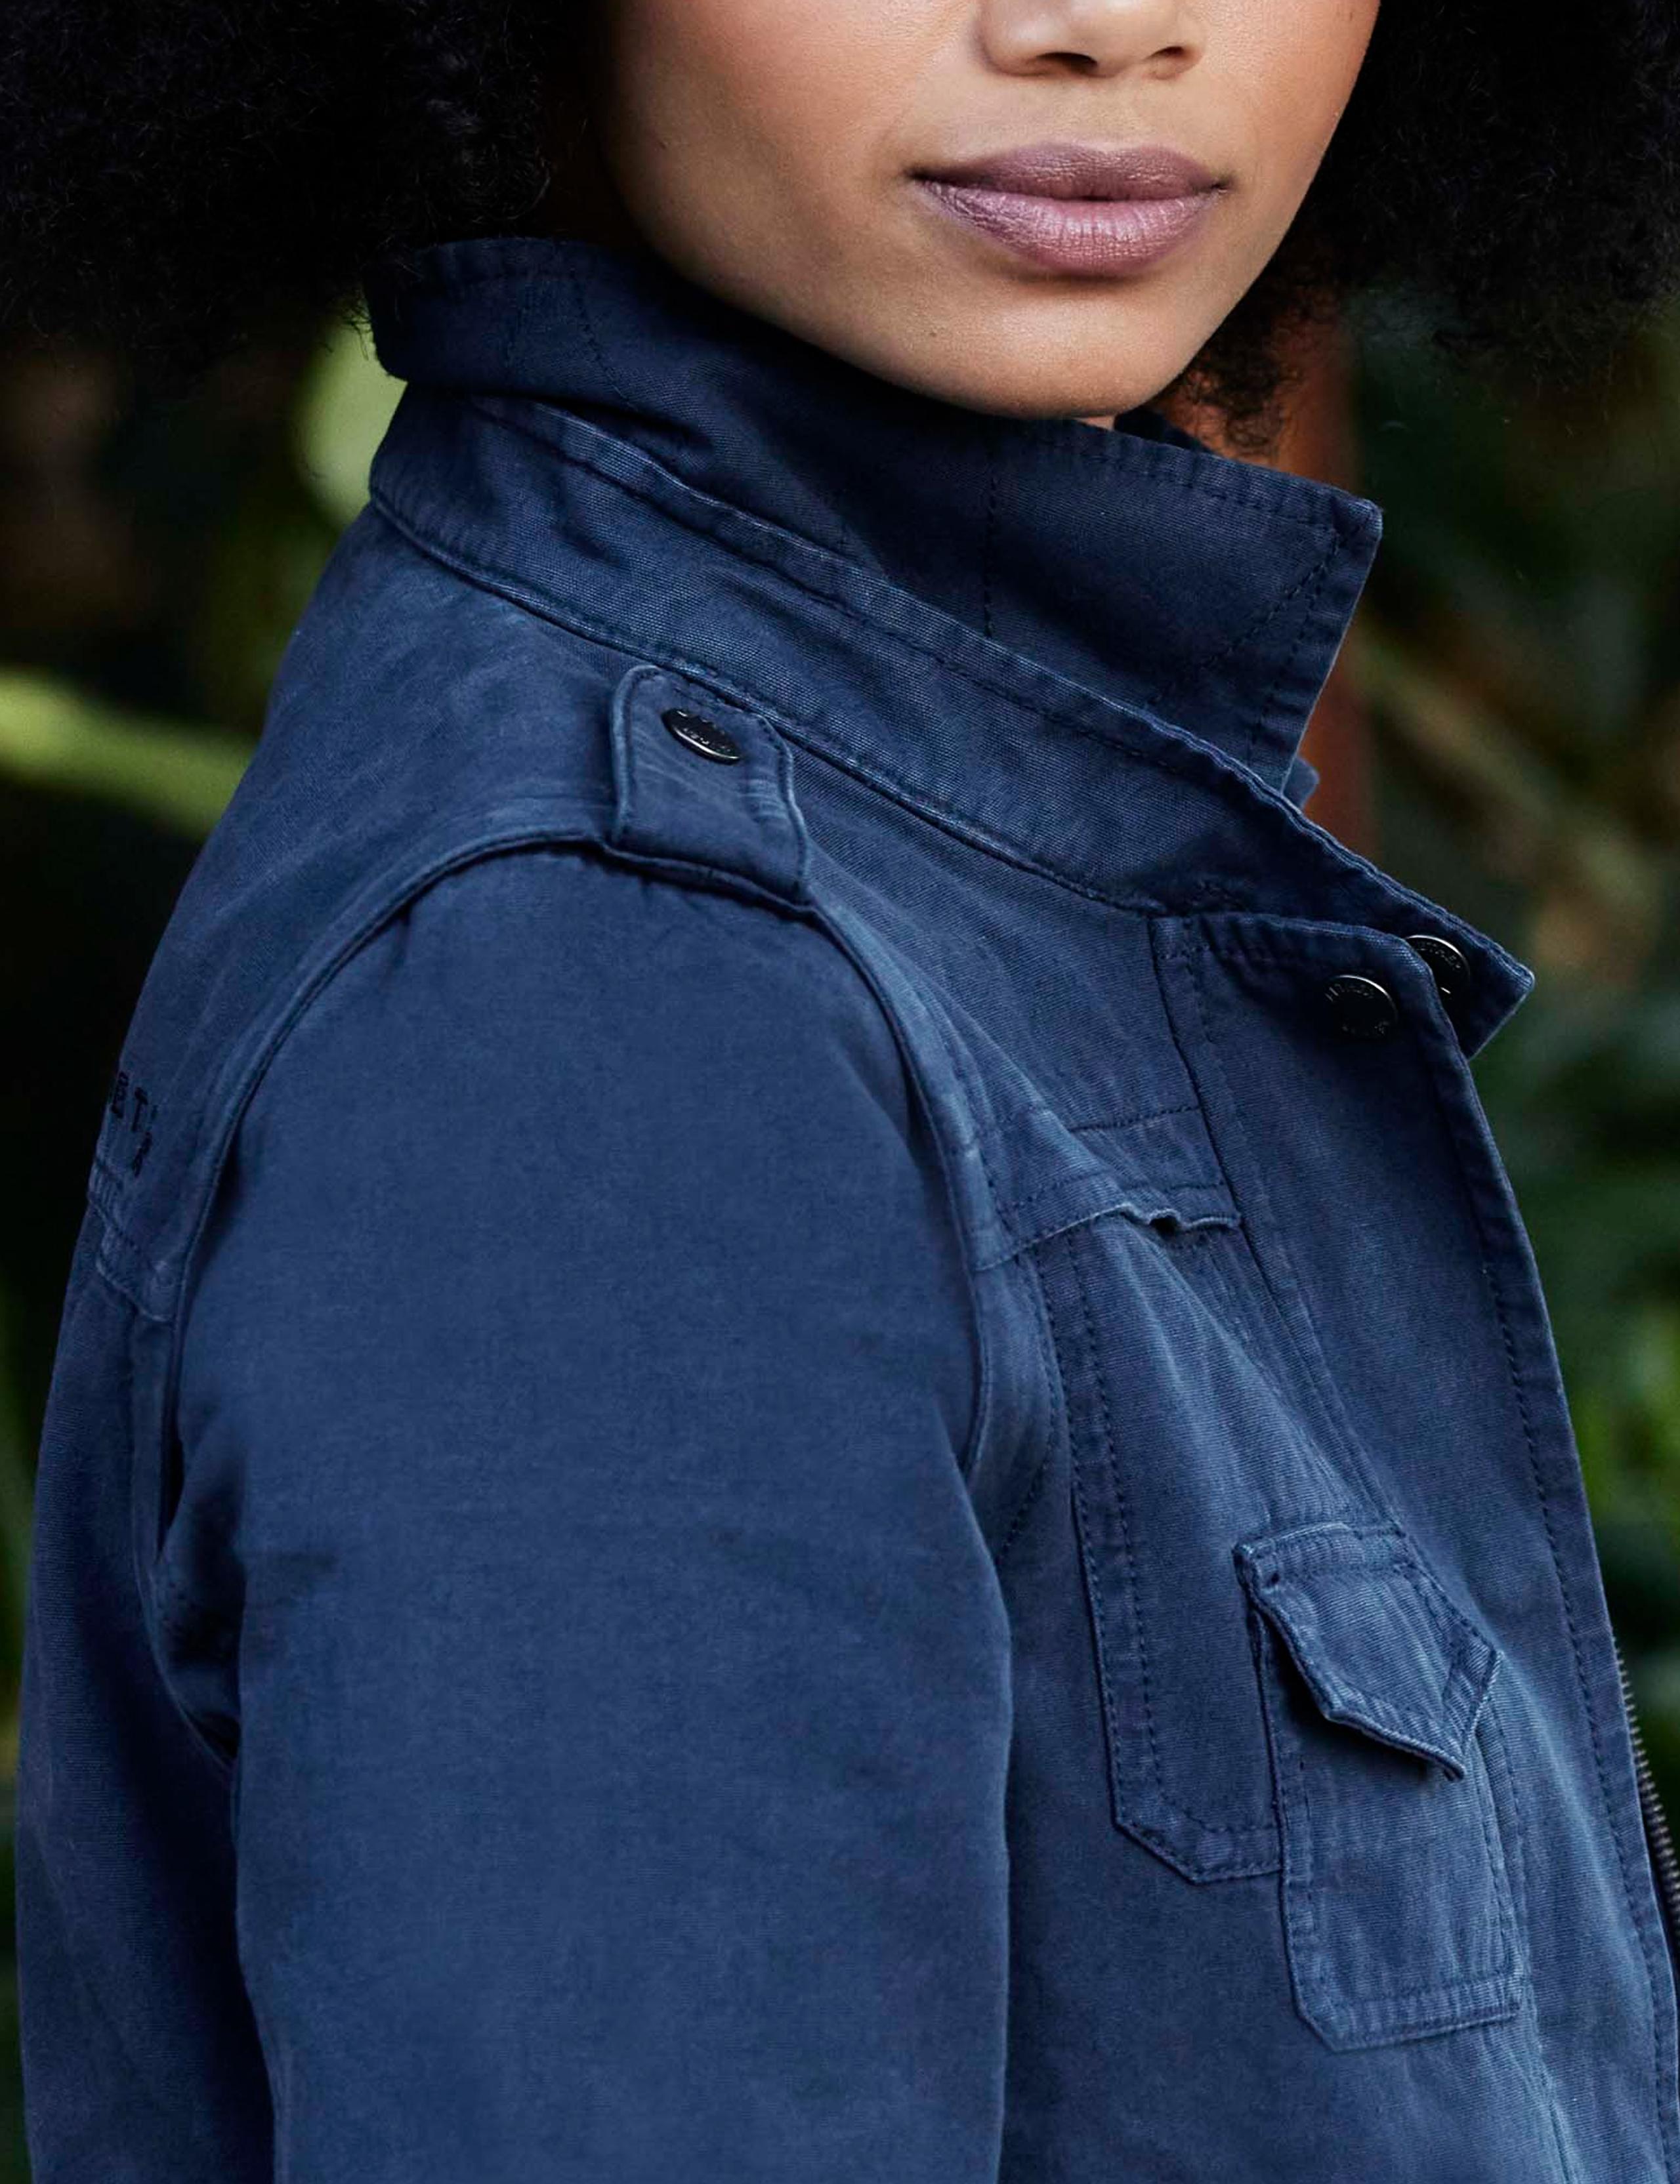 Shoulder detail of woman wearing Sahara Cotton Jacket